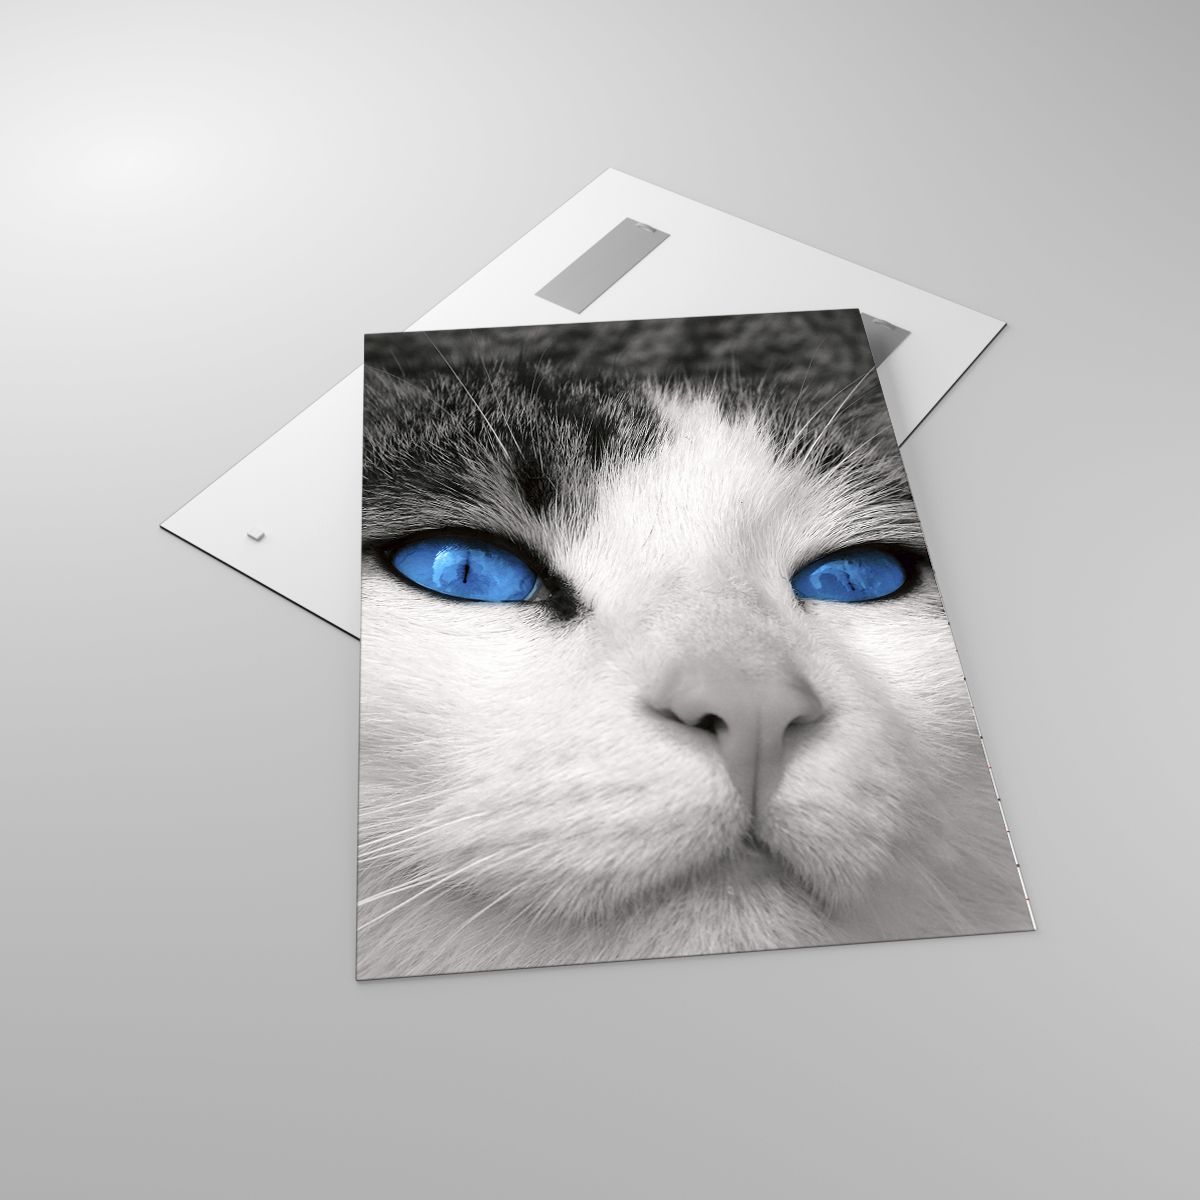 Glasbild Tiere, Glasbild Katze, Glasbild Blaue Augen, Glasbild Freund, Glasbild Schwarz Und Weiß